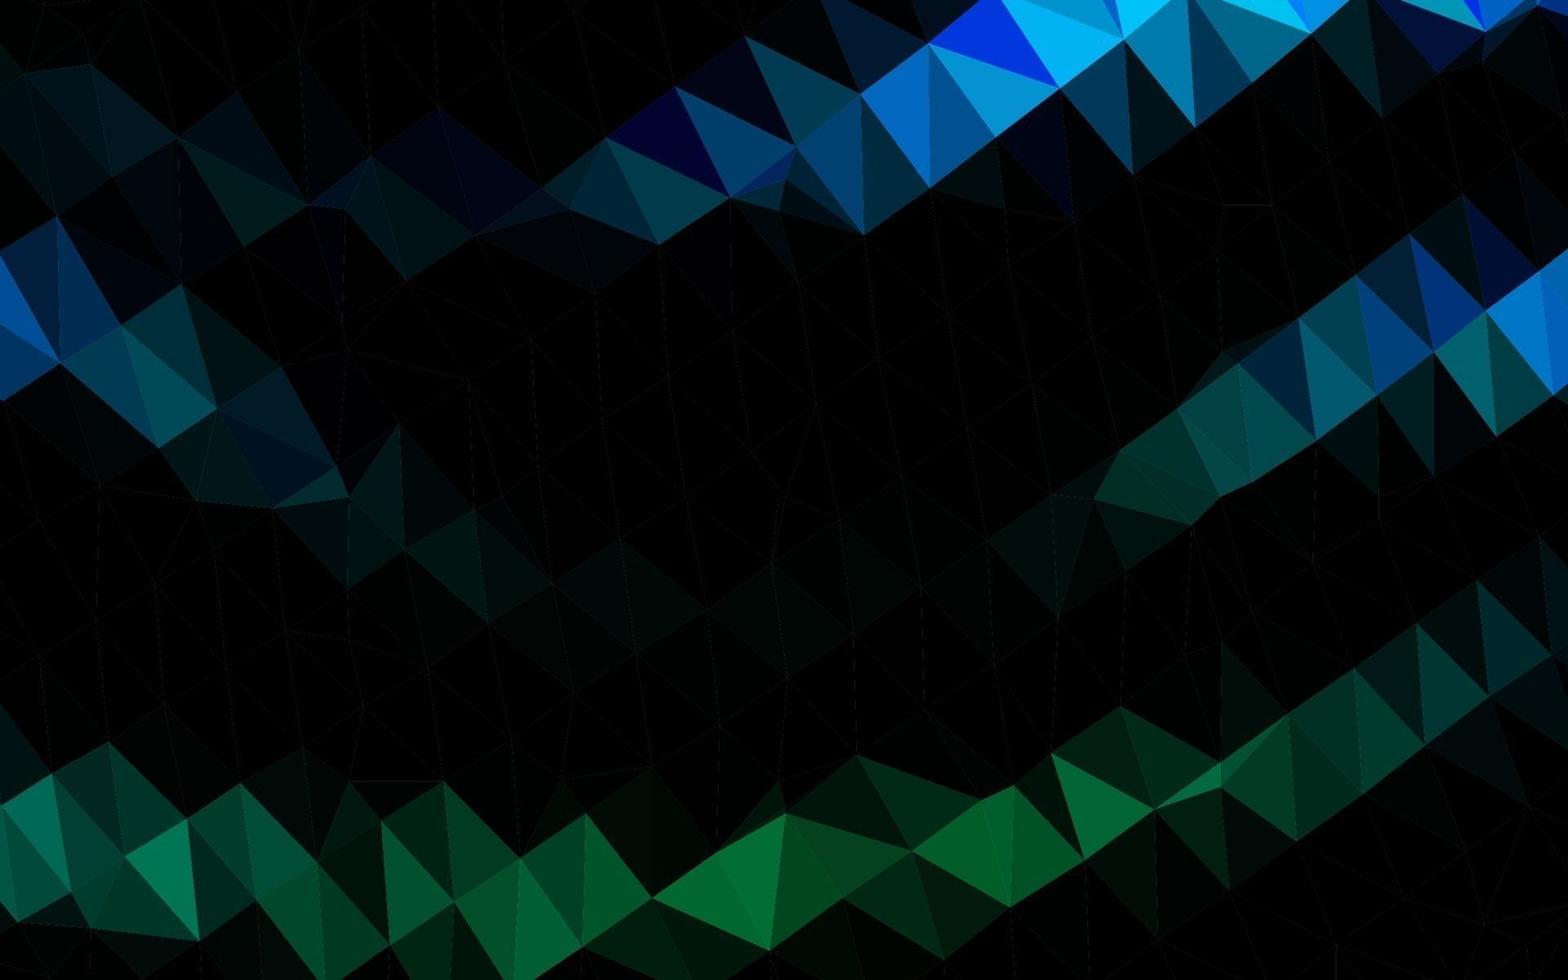 diseño poligonal abstracto del vector azul claro, verde.